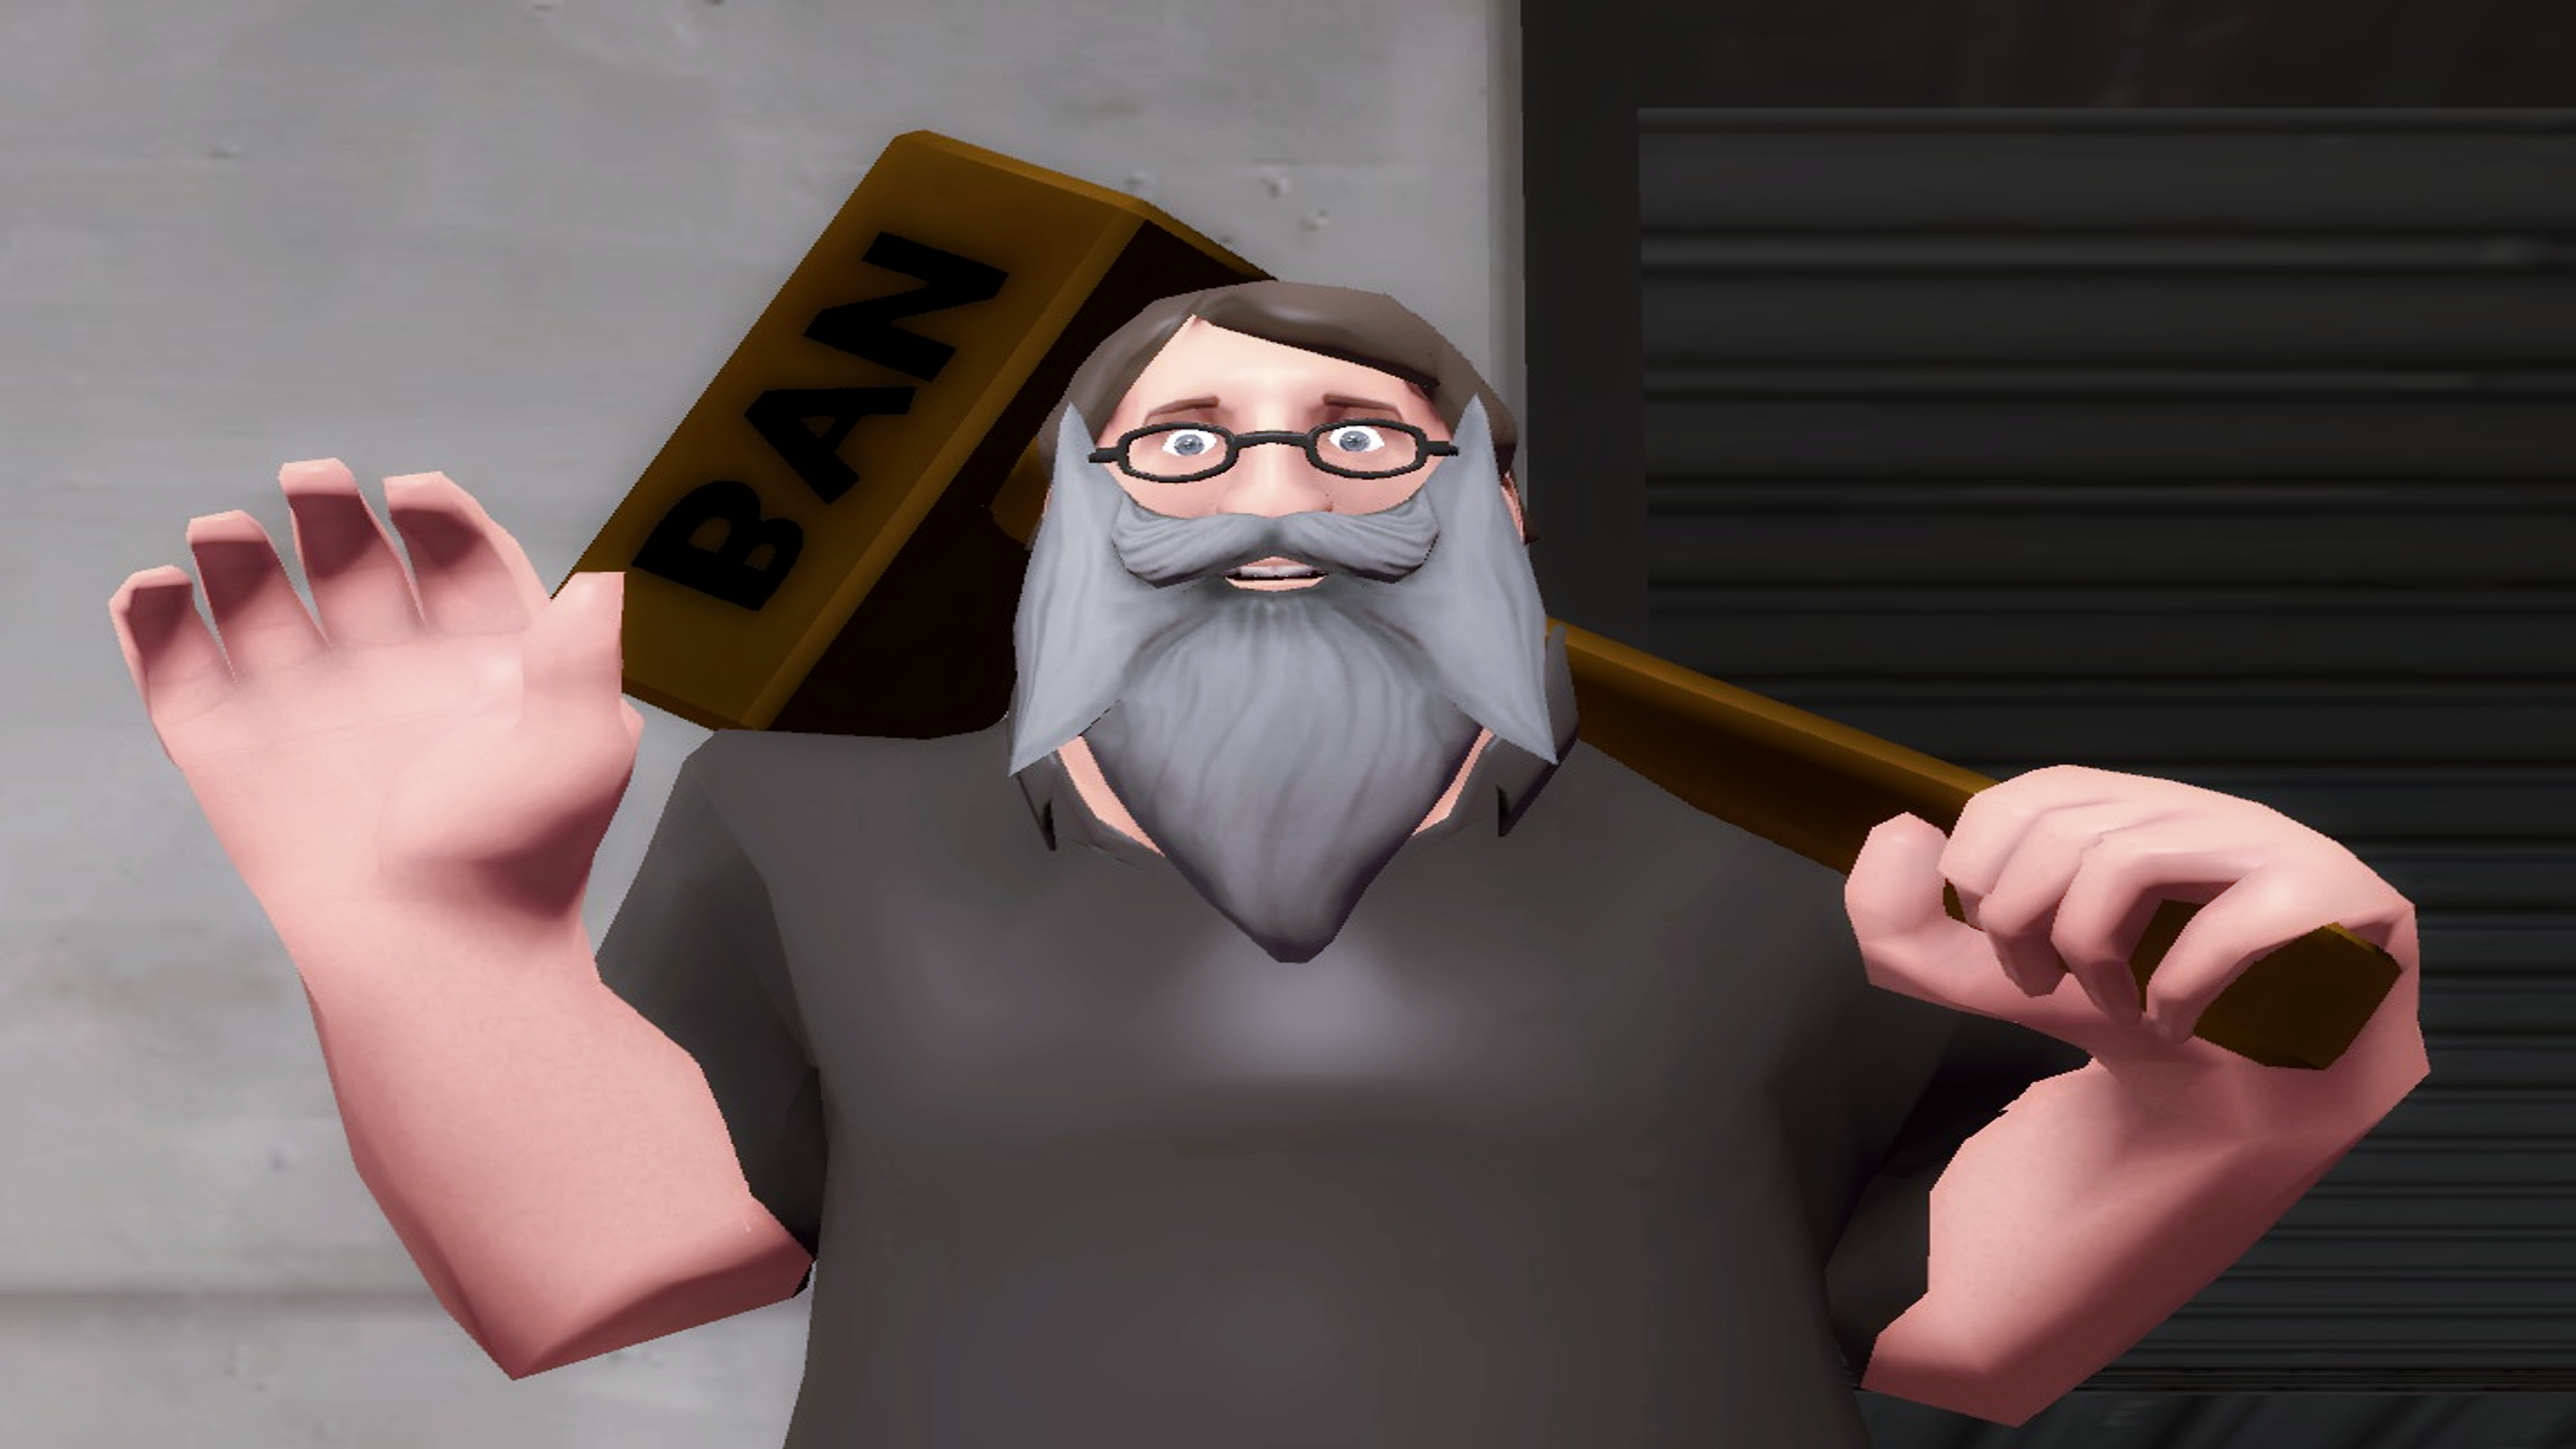 Gabe Newell by XtremeTerminator4 on DeviantArt